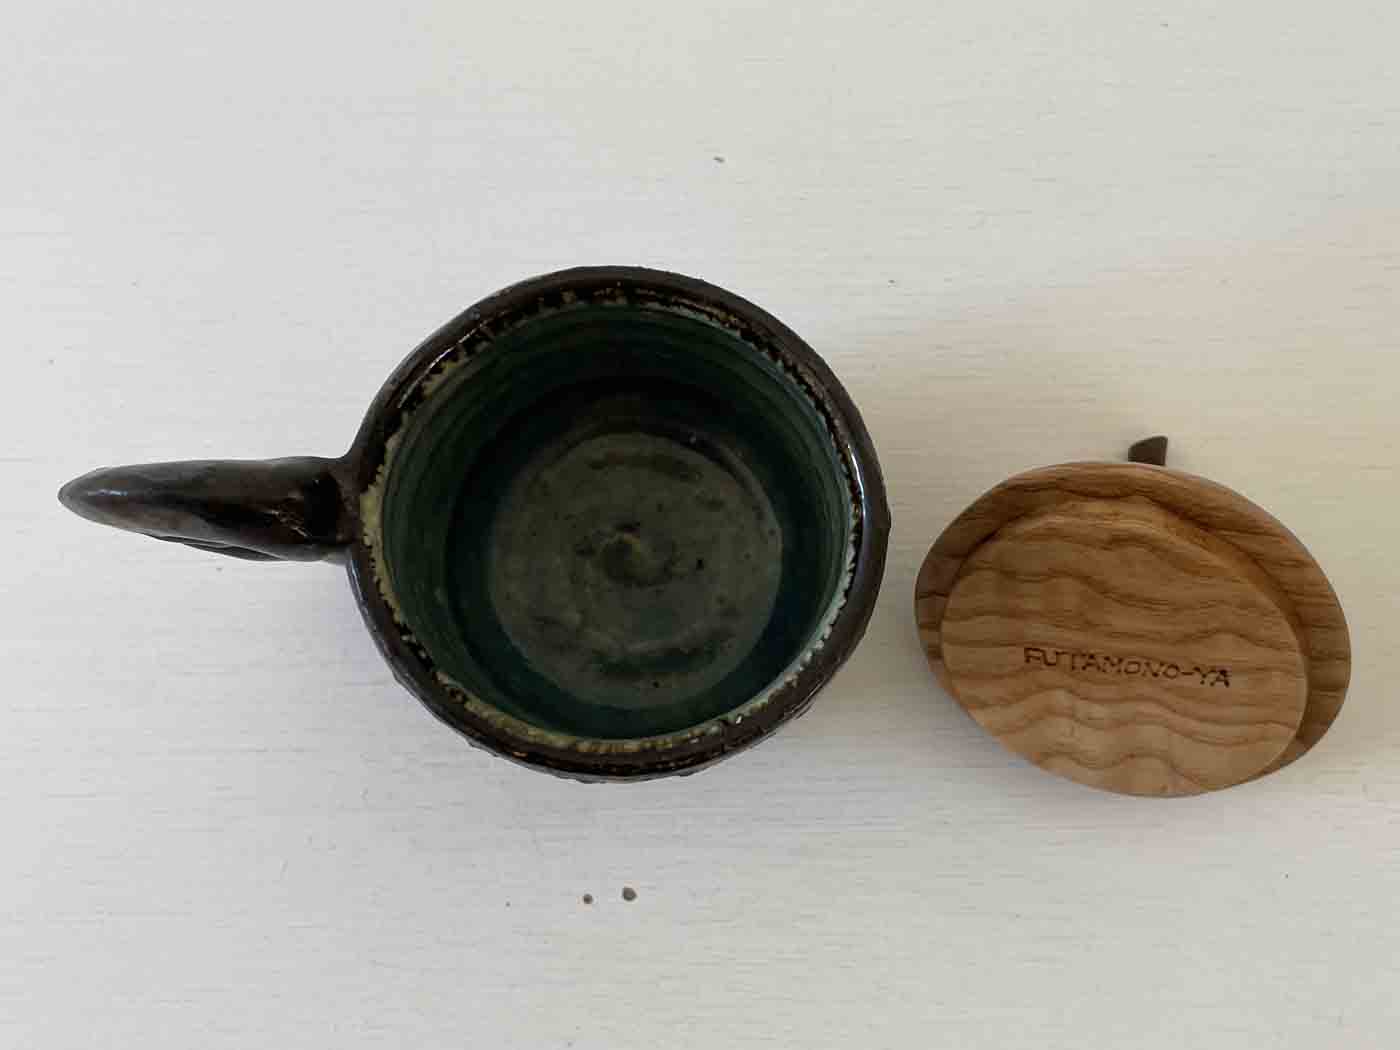 カップ型・黒／FUTAMONO-YA：陶の器と木の蓋、コラボレーションブランド